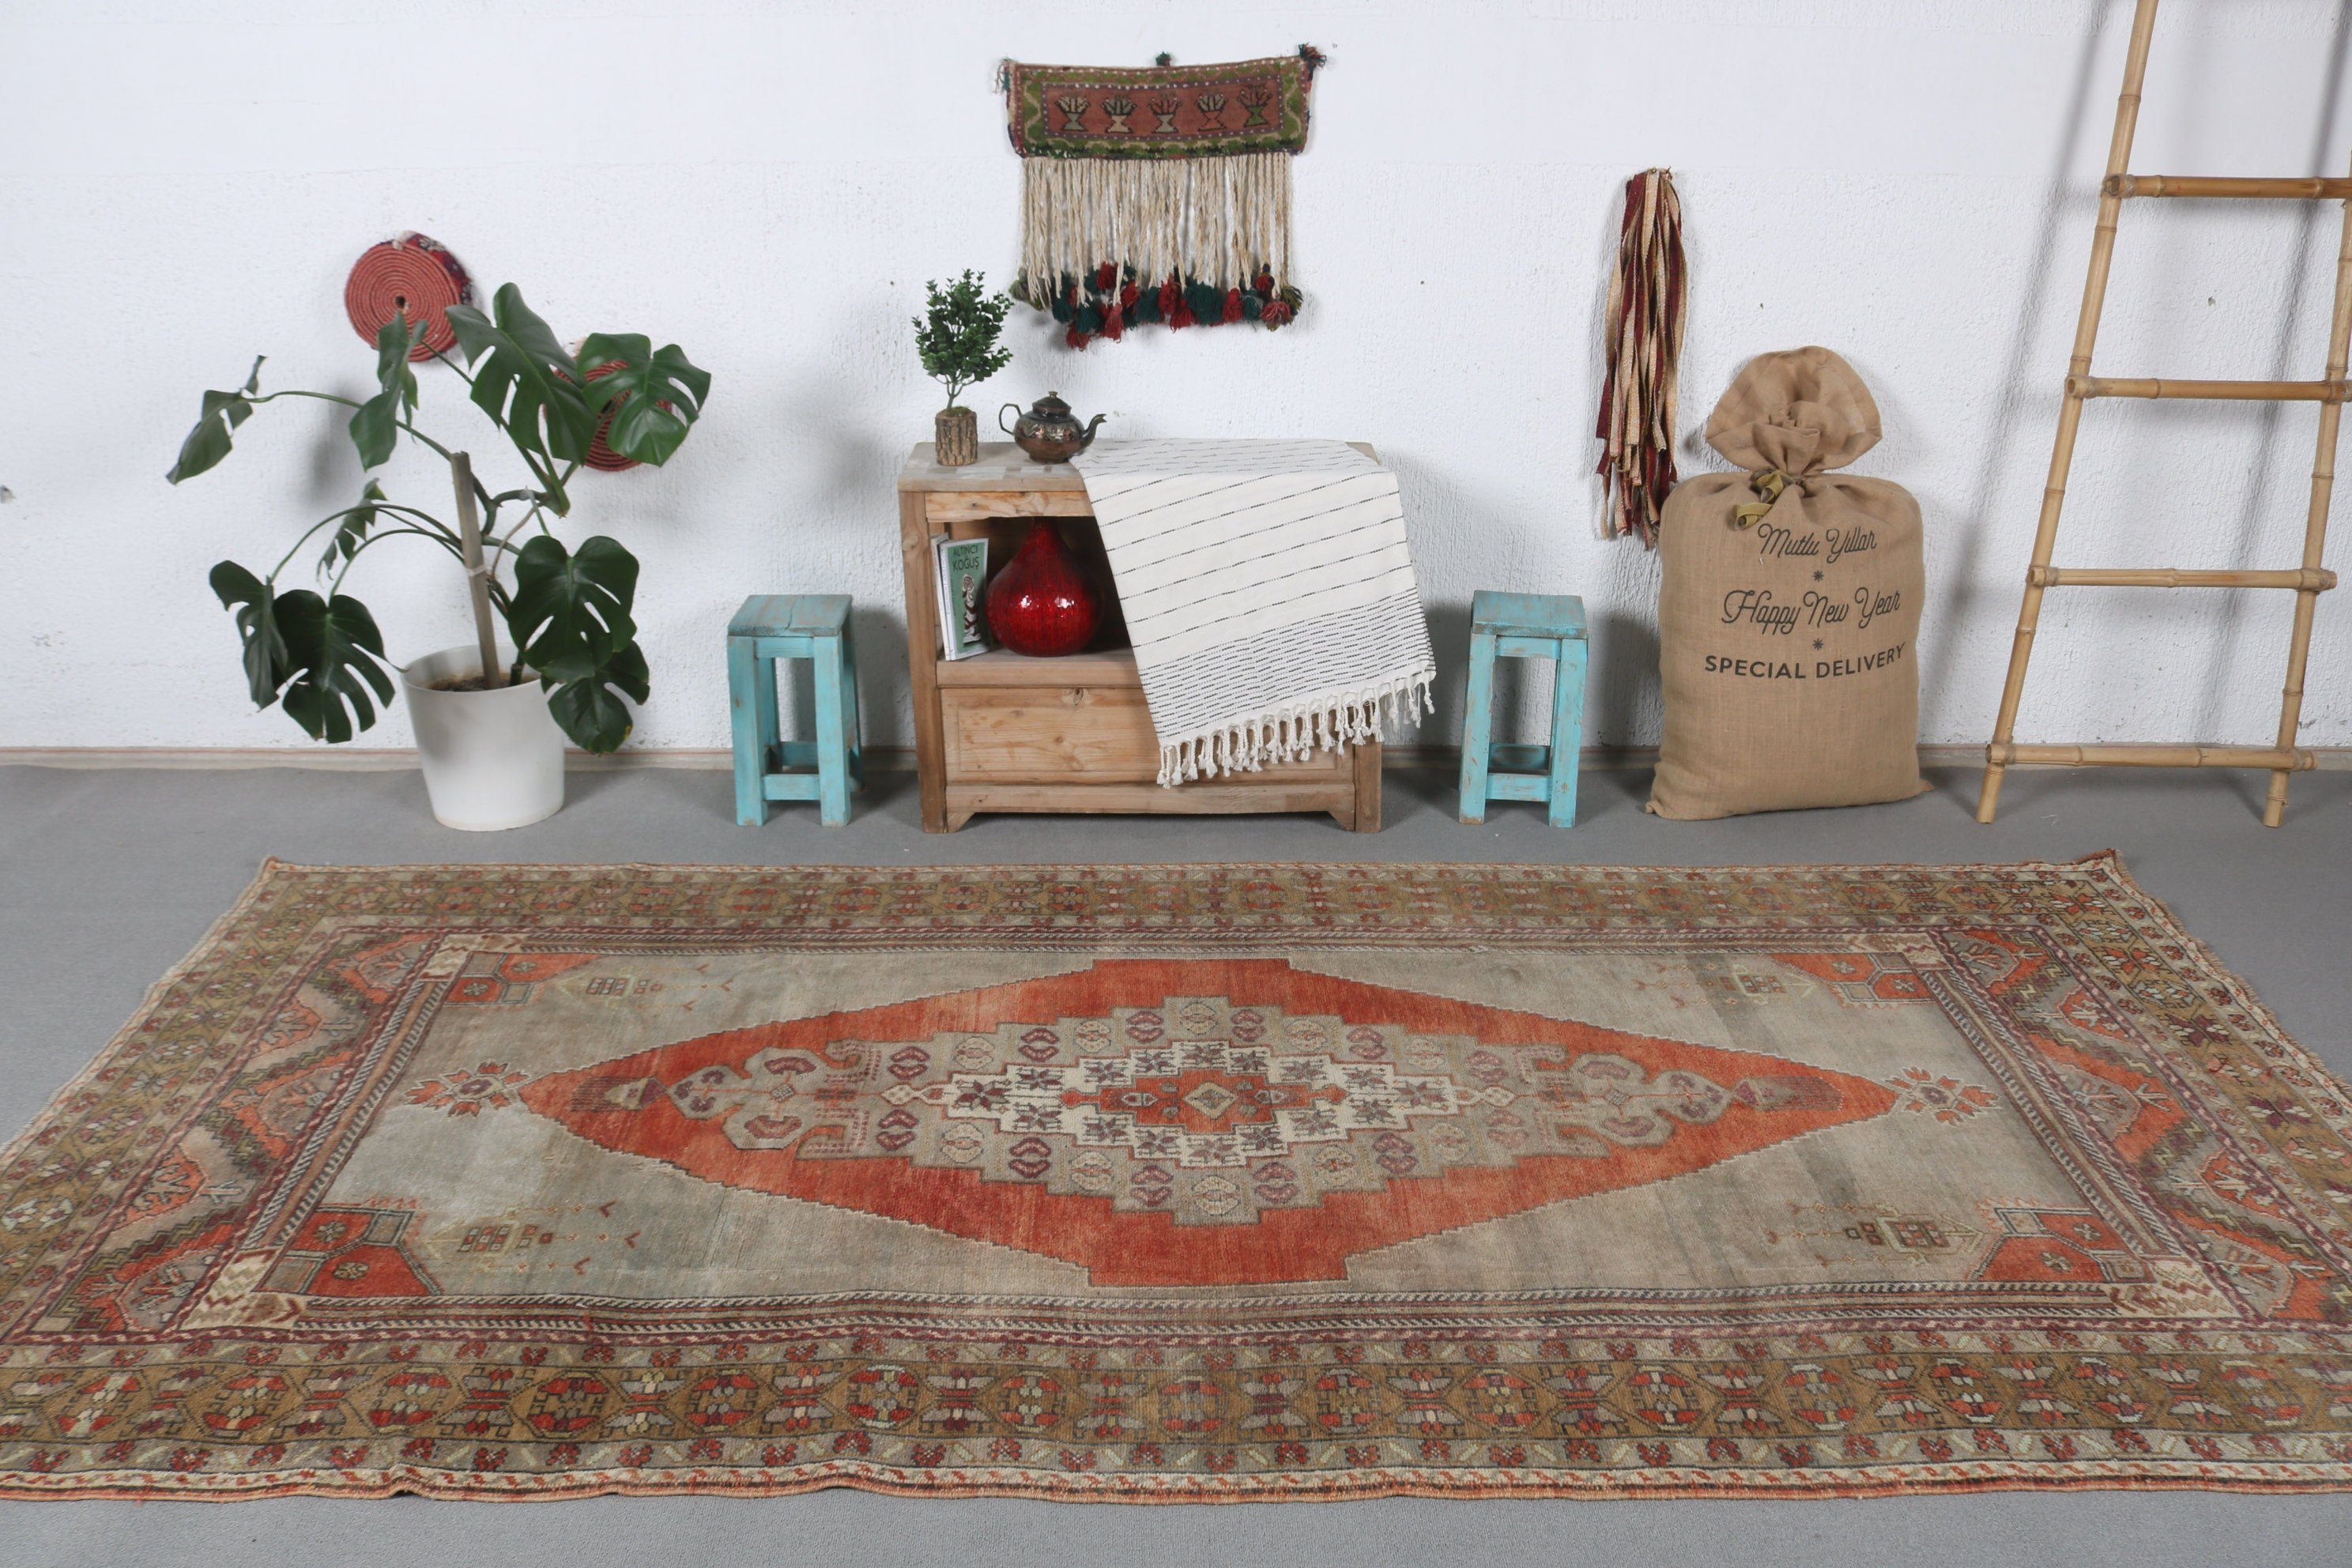 5x10.2 ft Large Rug, Salon Rug, Red Floor Rug, Rugs for Bedroom, Turkish Rug, Living Room Rug, Antique Rug, Vintage Rugs